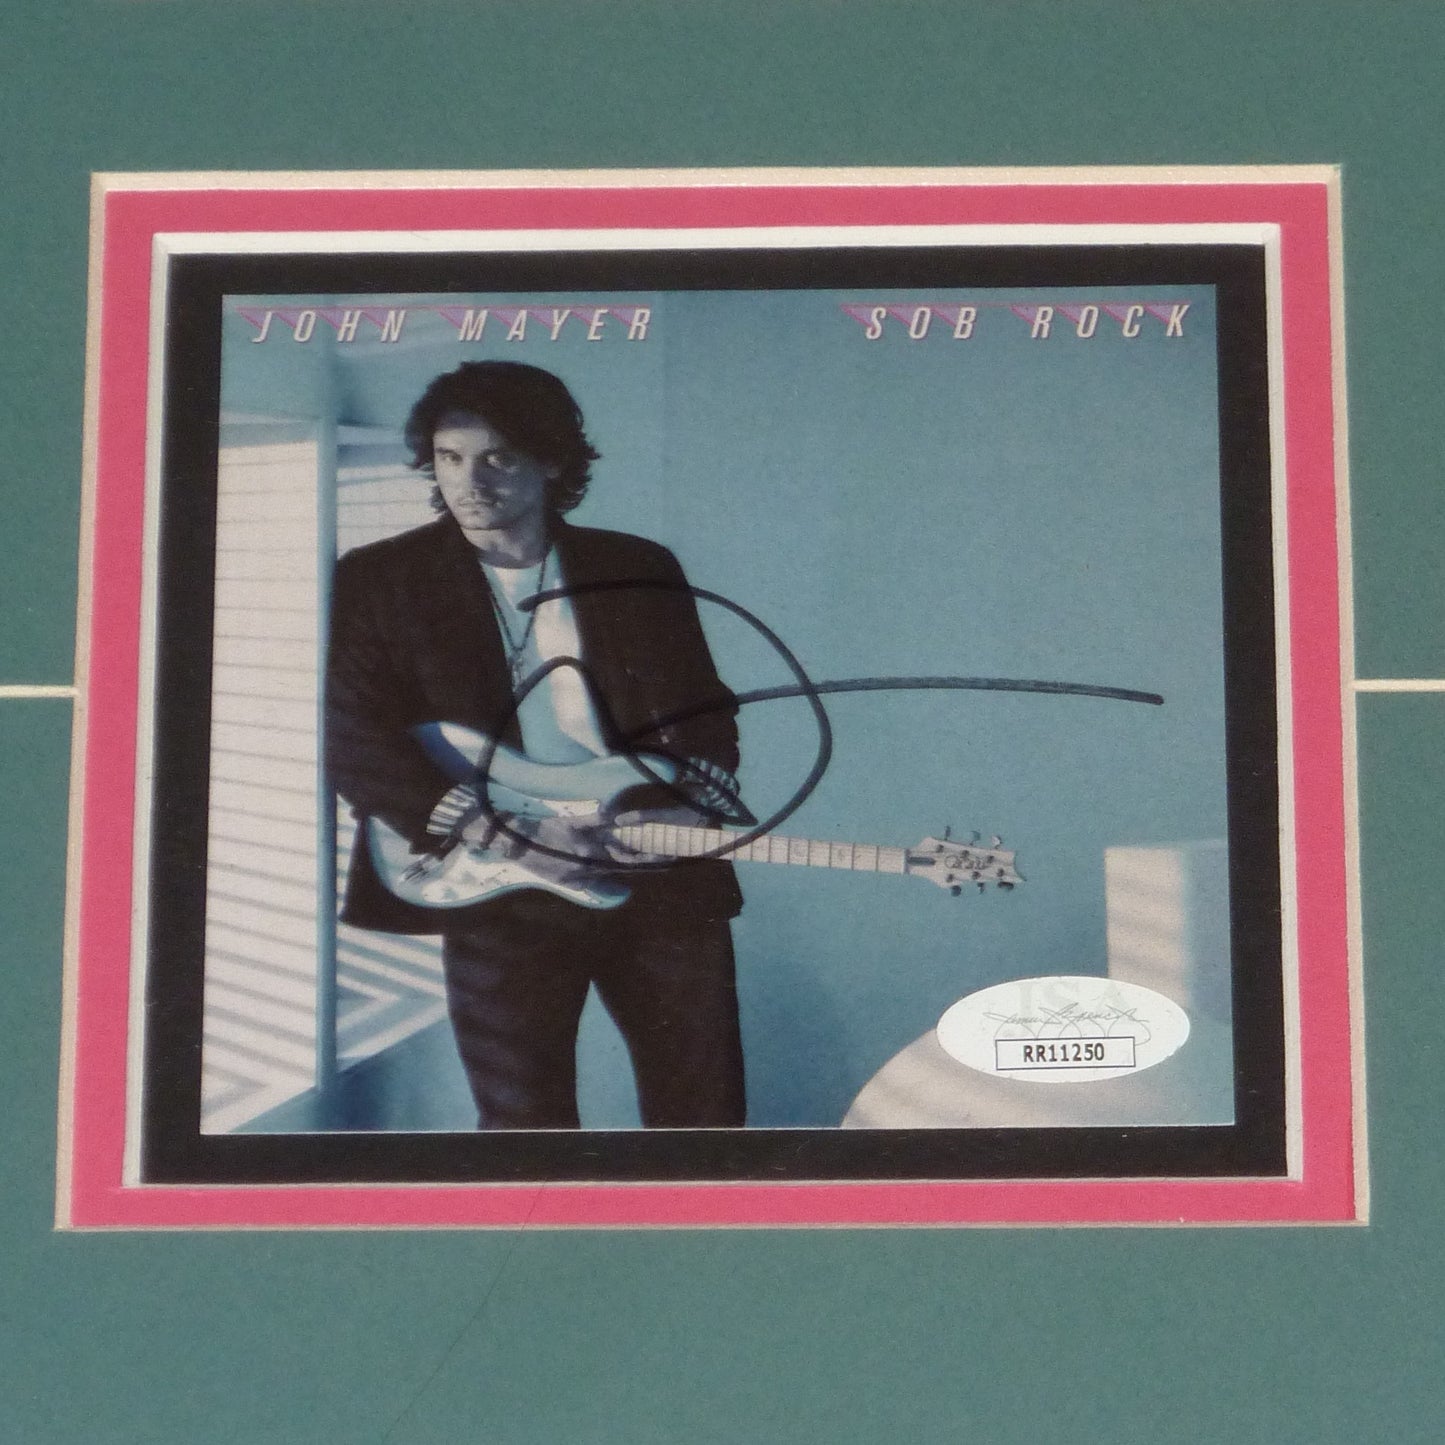 John Mayer Autographed Sob Rock Deluxe Framed CD Pamplet - JSA